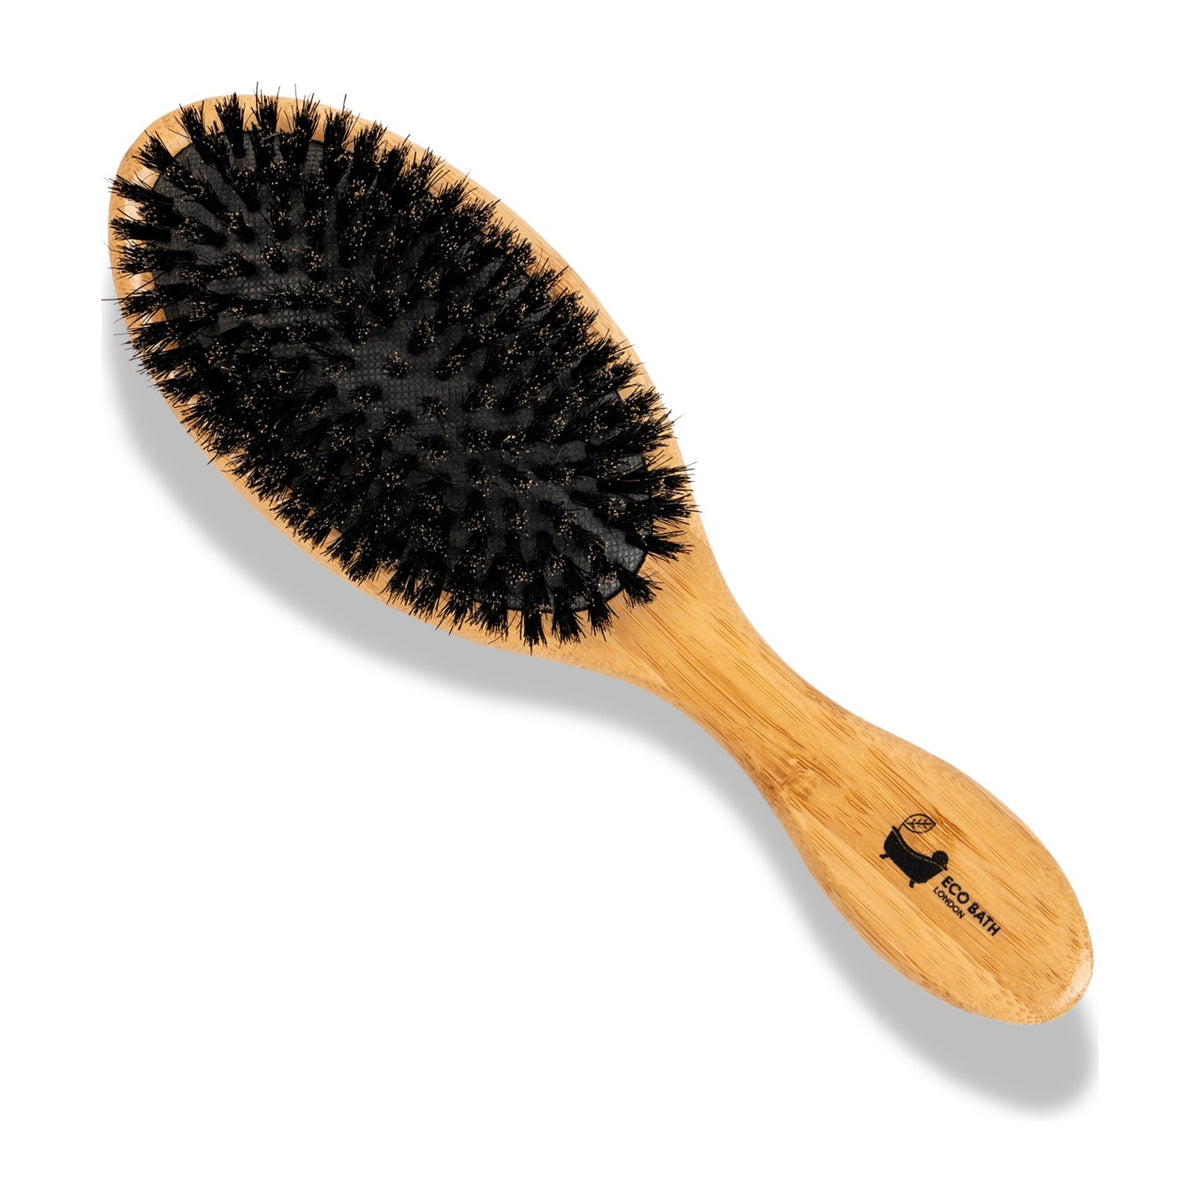 Eco Bath Bamboo Hairbrush Boar Bristle